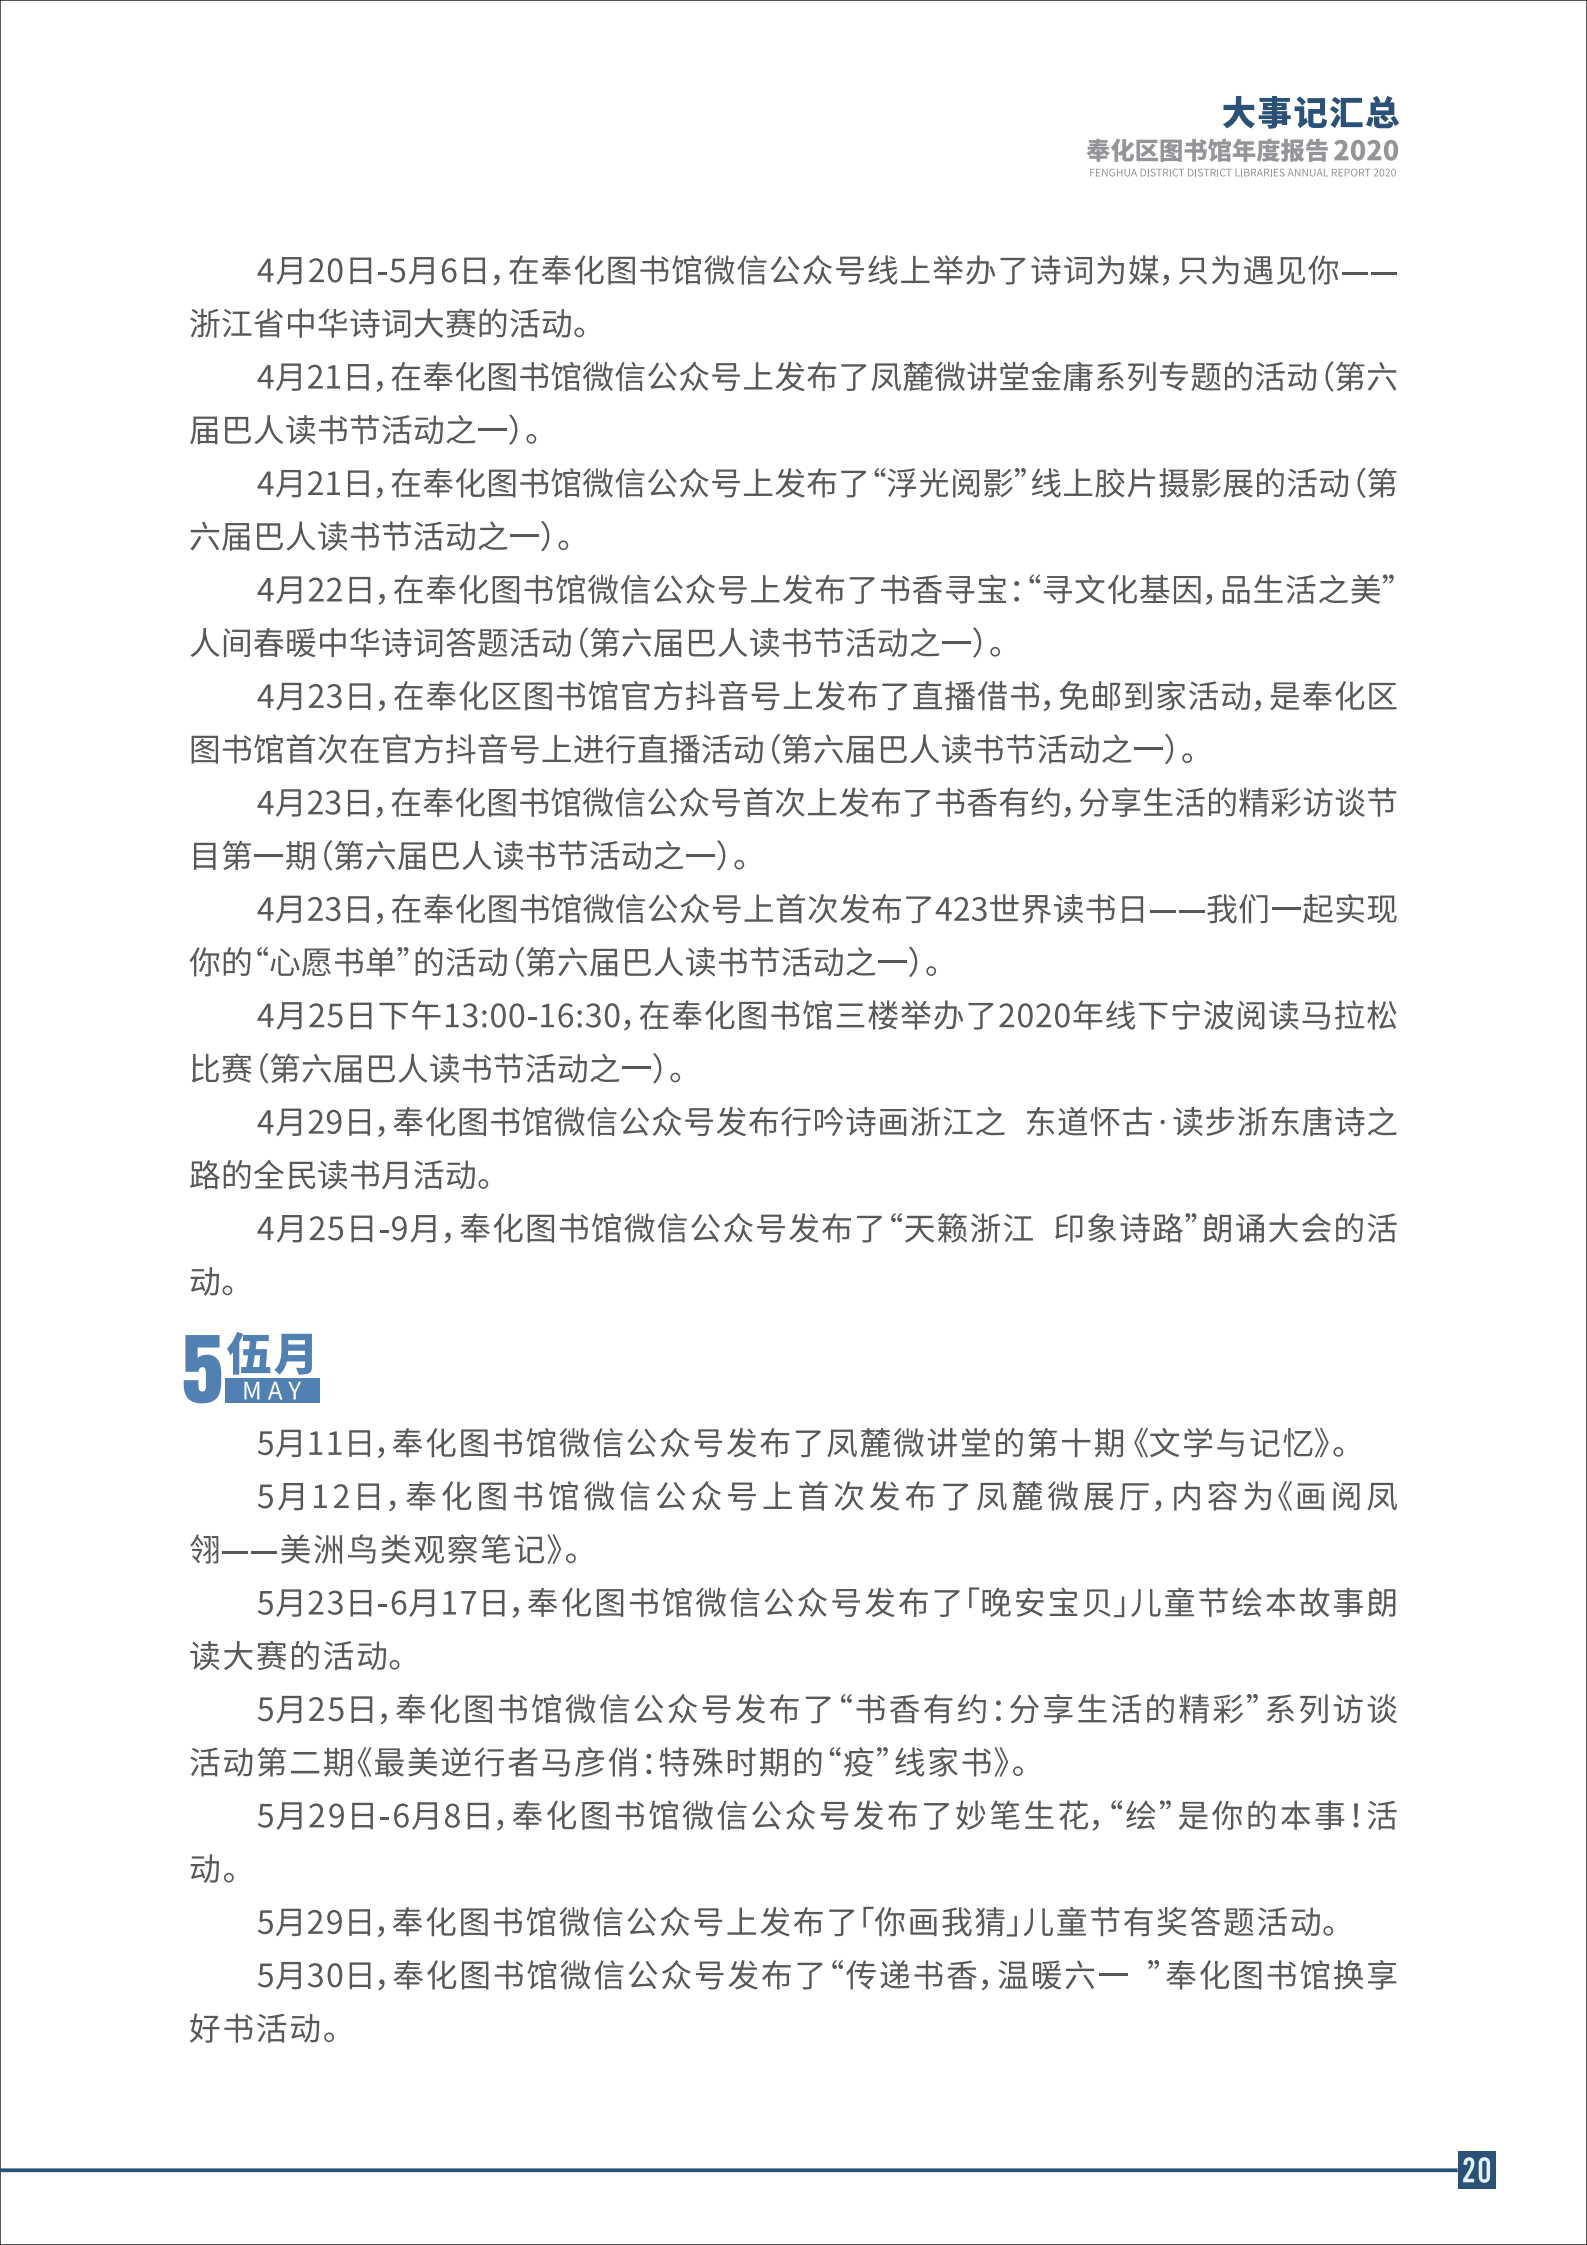 宁波市奉化区图书馆2020年年度报告 终稿_20.png